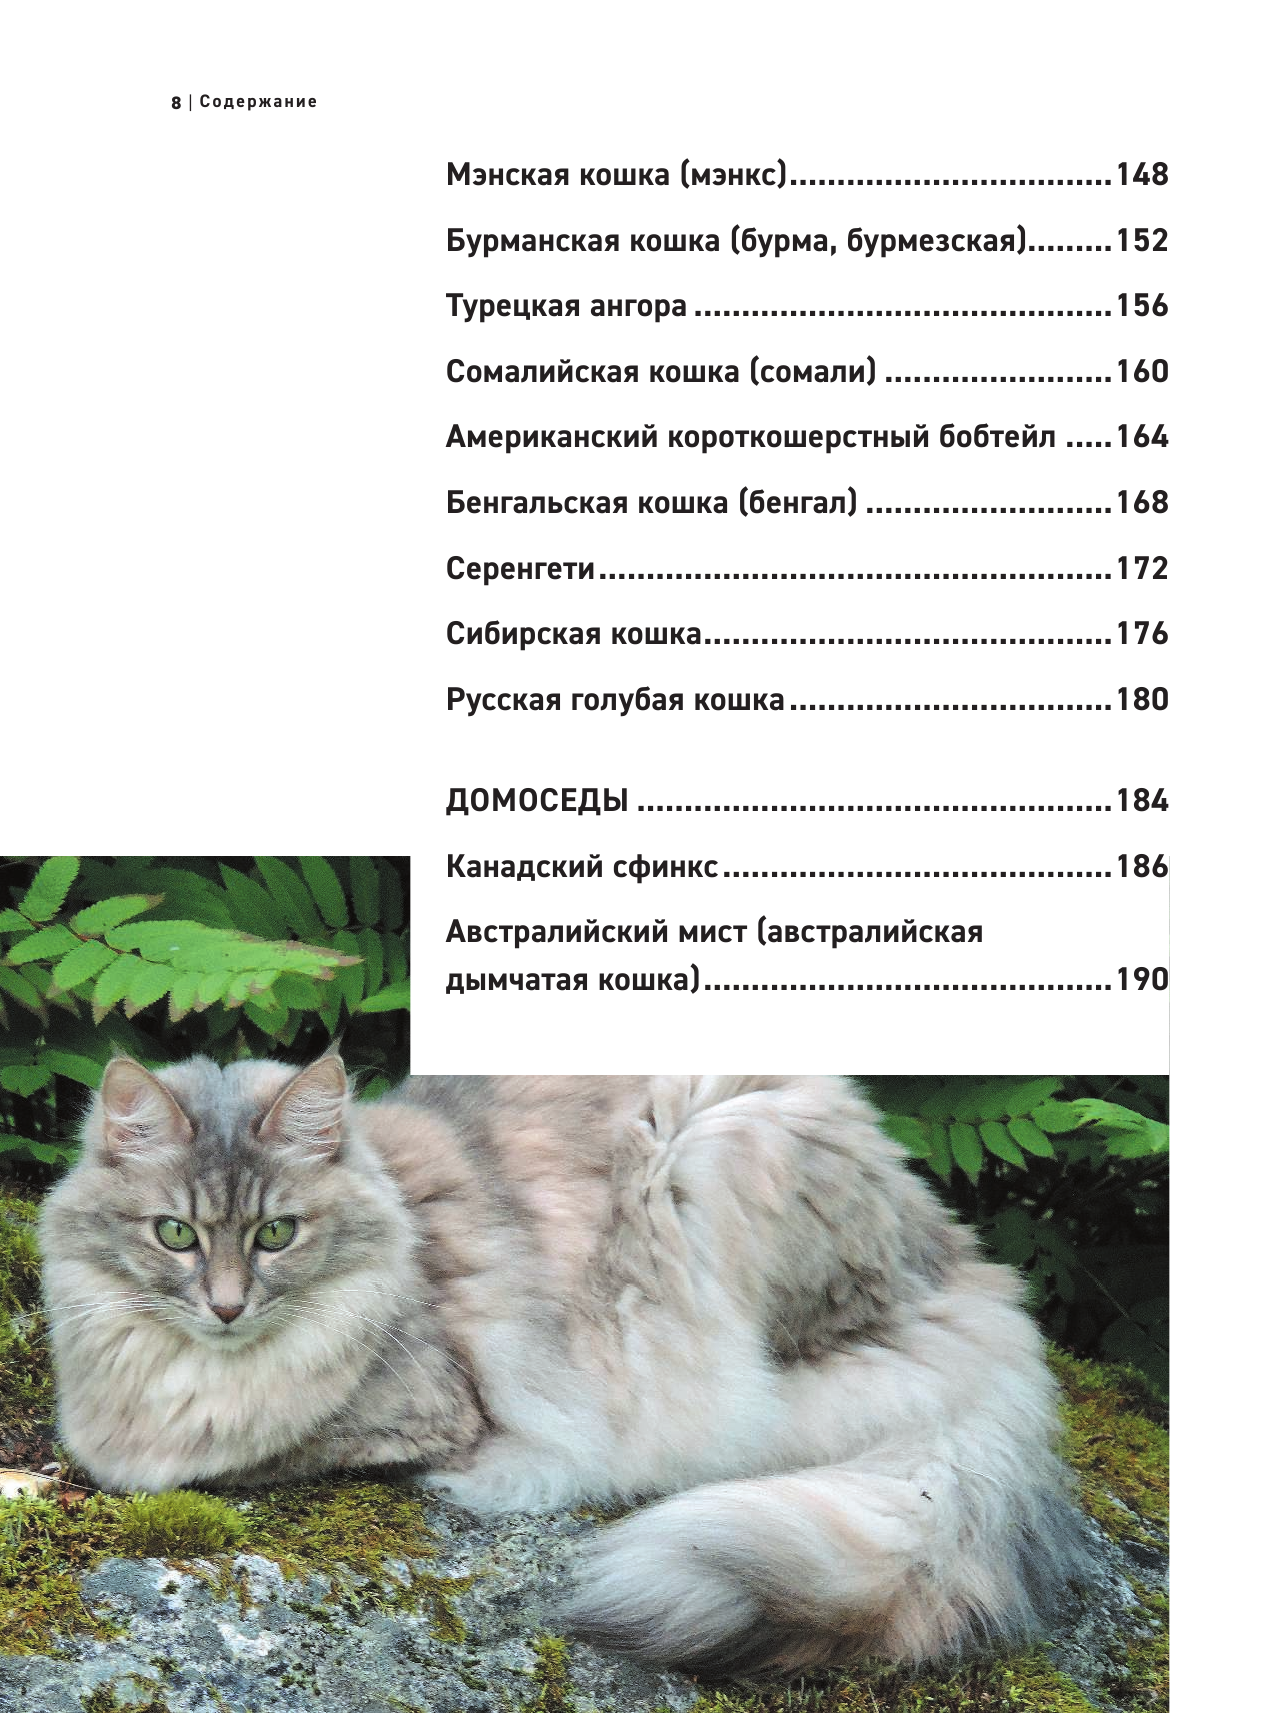 Все породы кошек. Большая иллюстрированная энциклопедия - фото №20